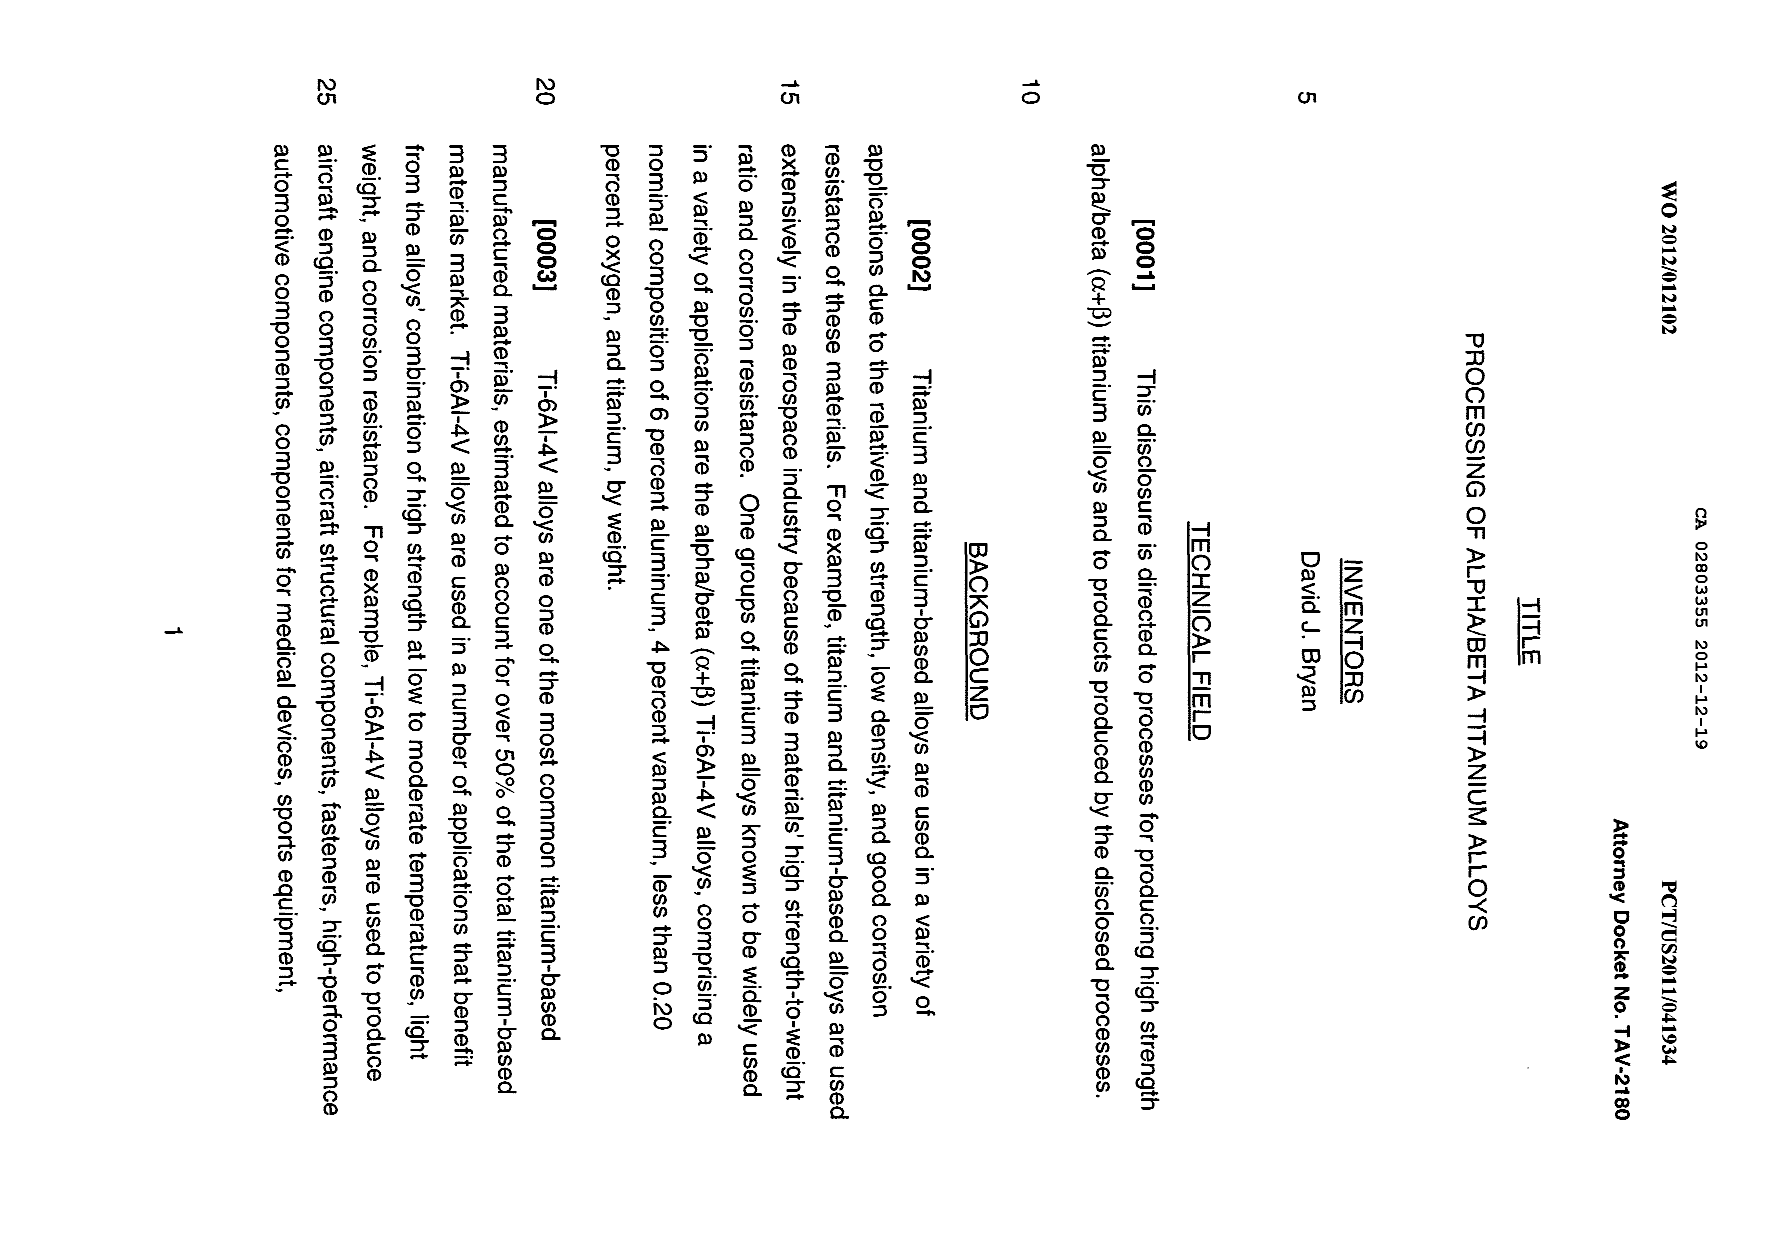 Canadian Patent Document 2803355. Description 20121219. Image 1 of 26